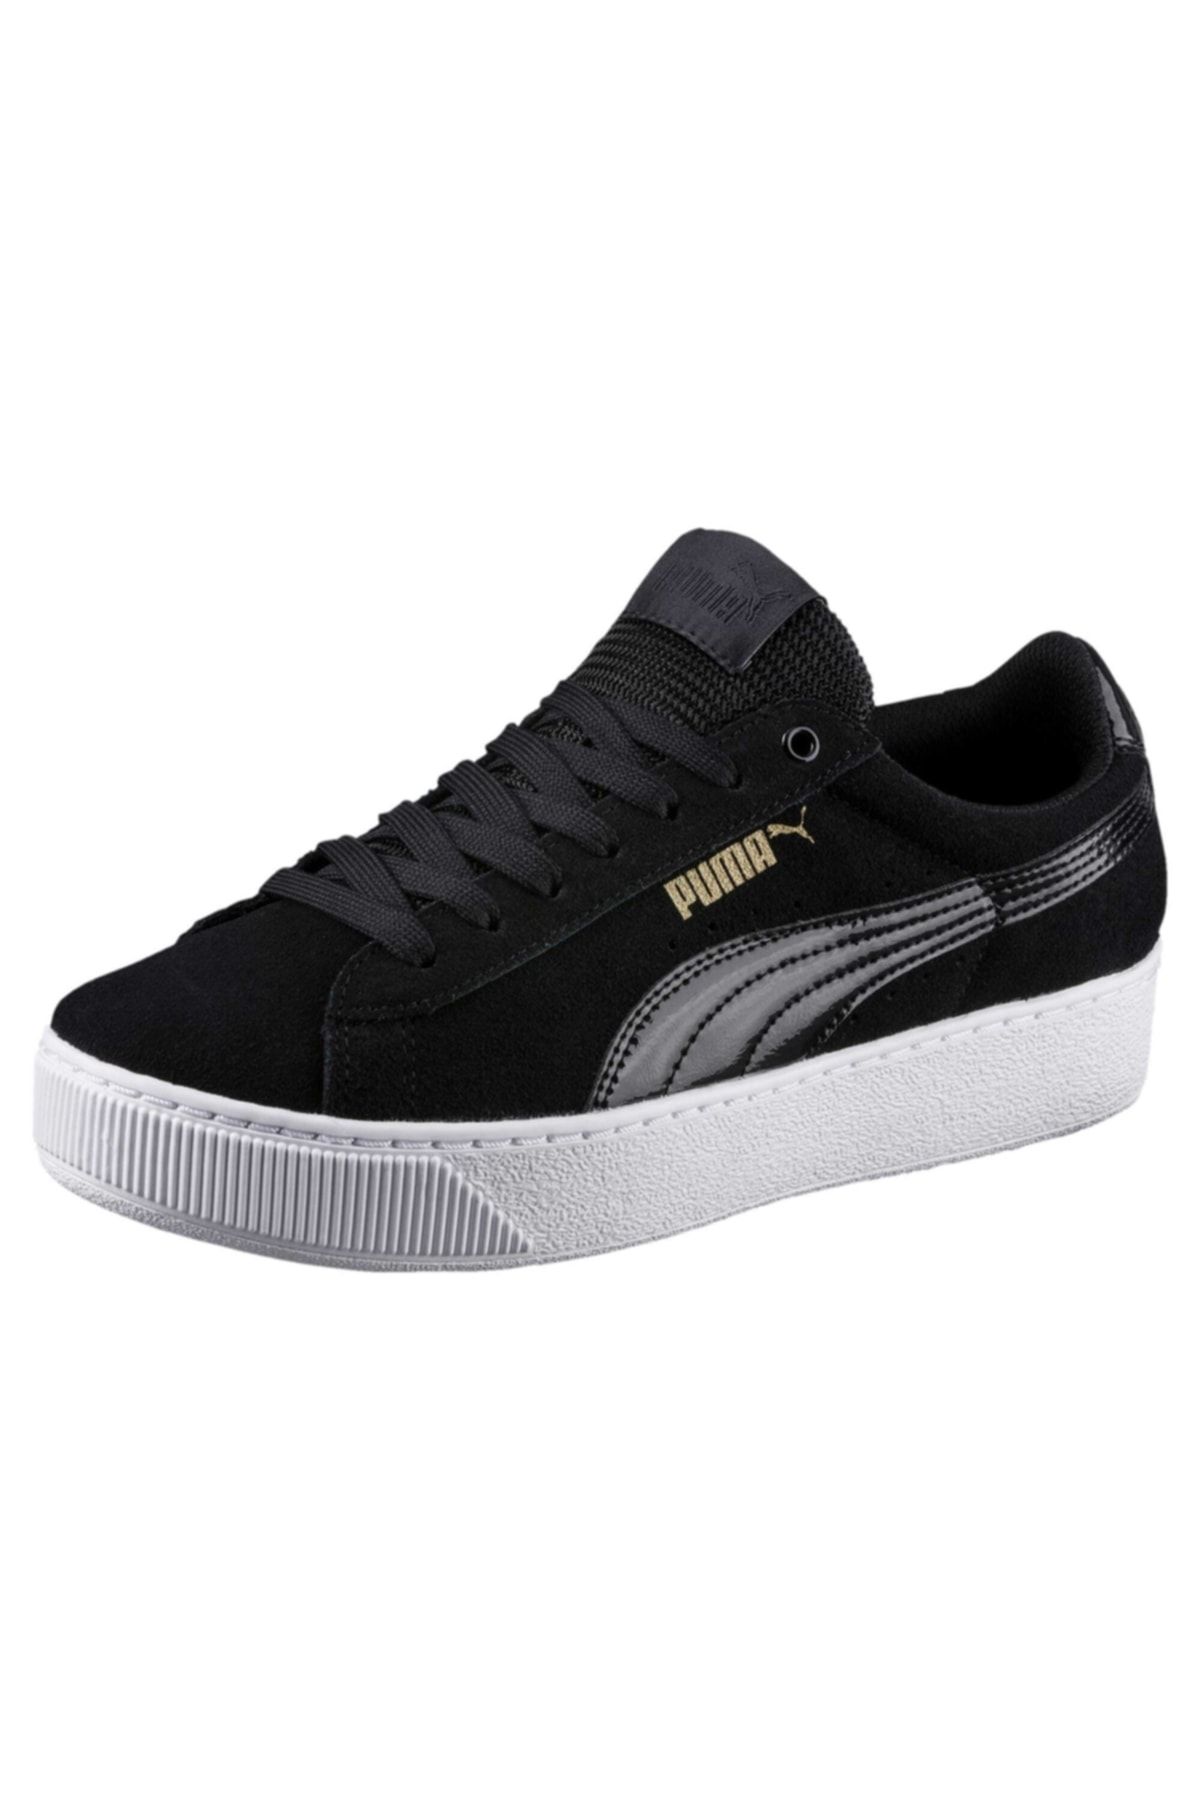 Puma Vikky Platform Siyah Beyaz Kadın Sneaker Ayakkabı 100352173